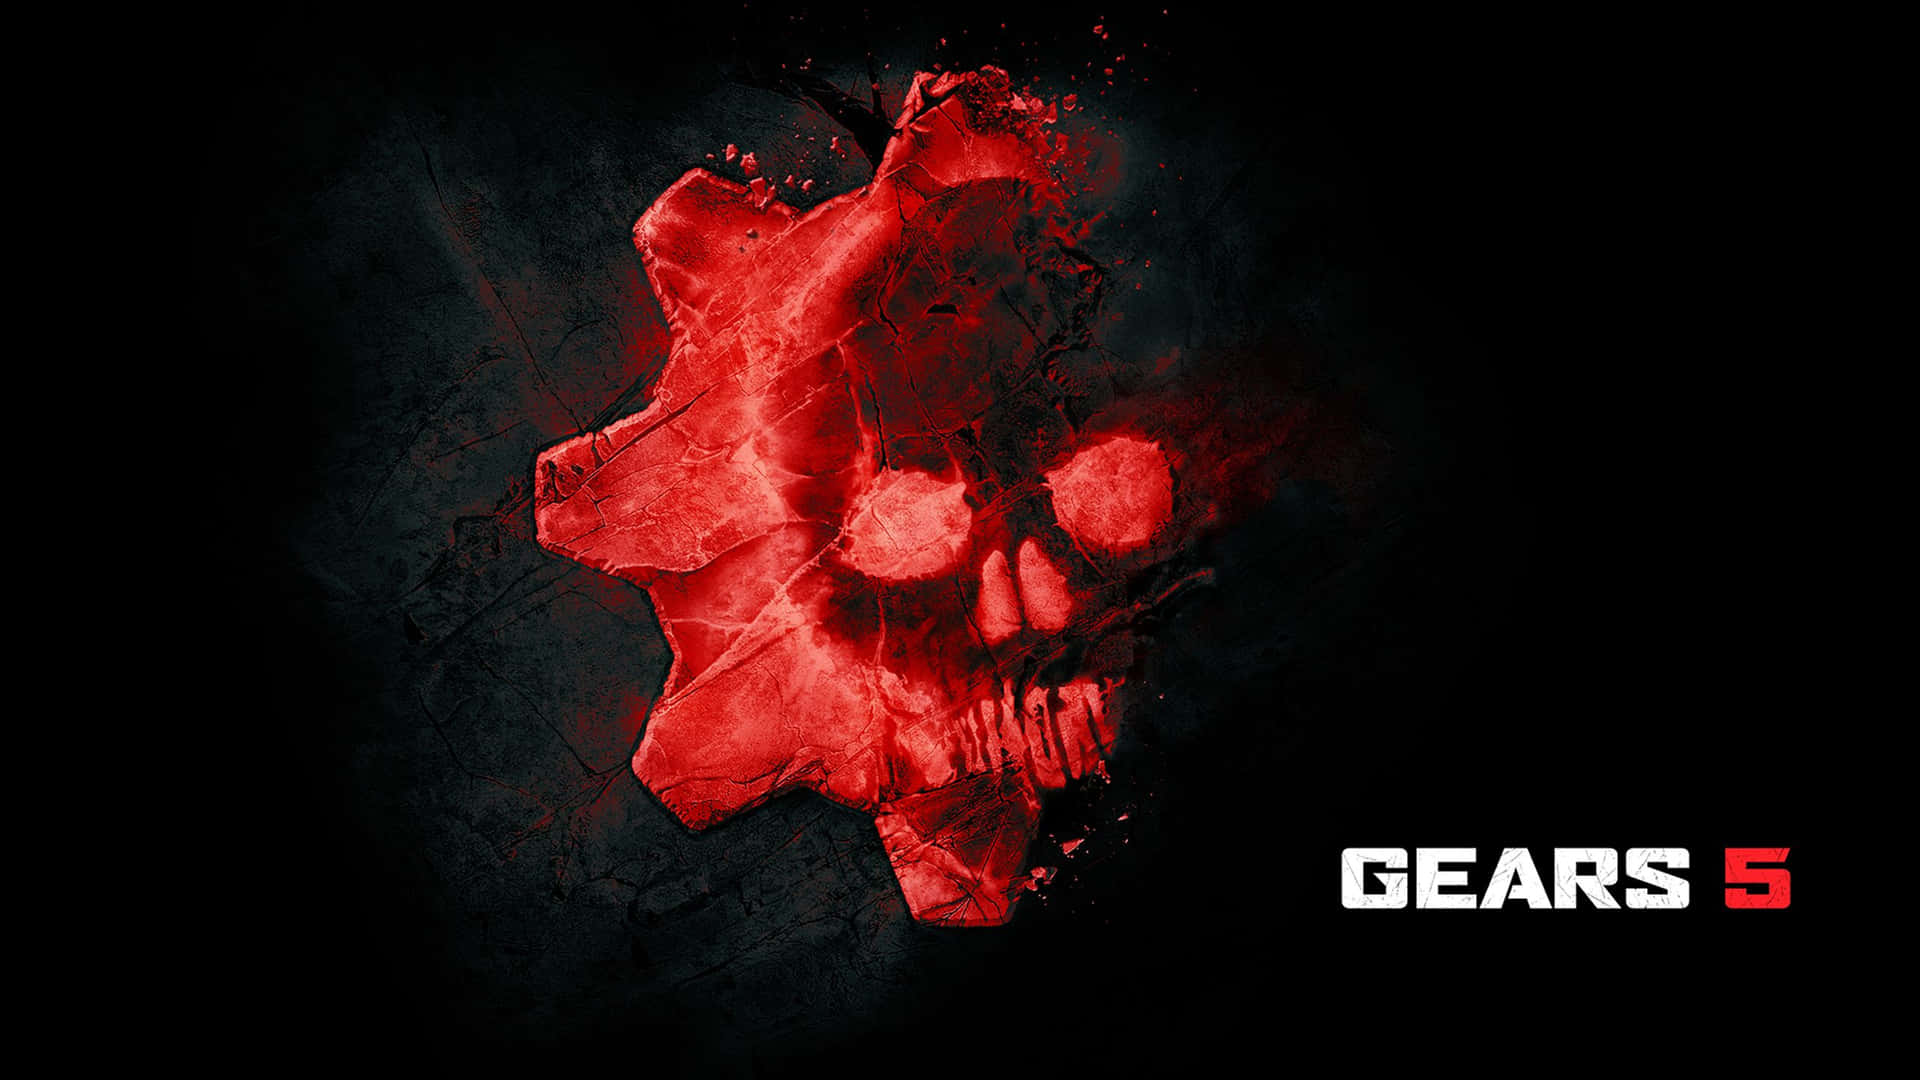 Gearsof War 5 Röd Logotyp. Wallpaper